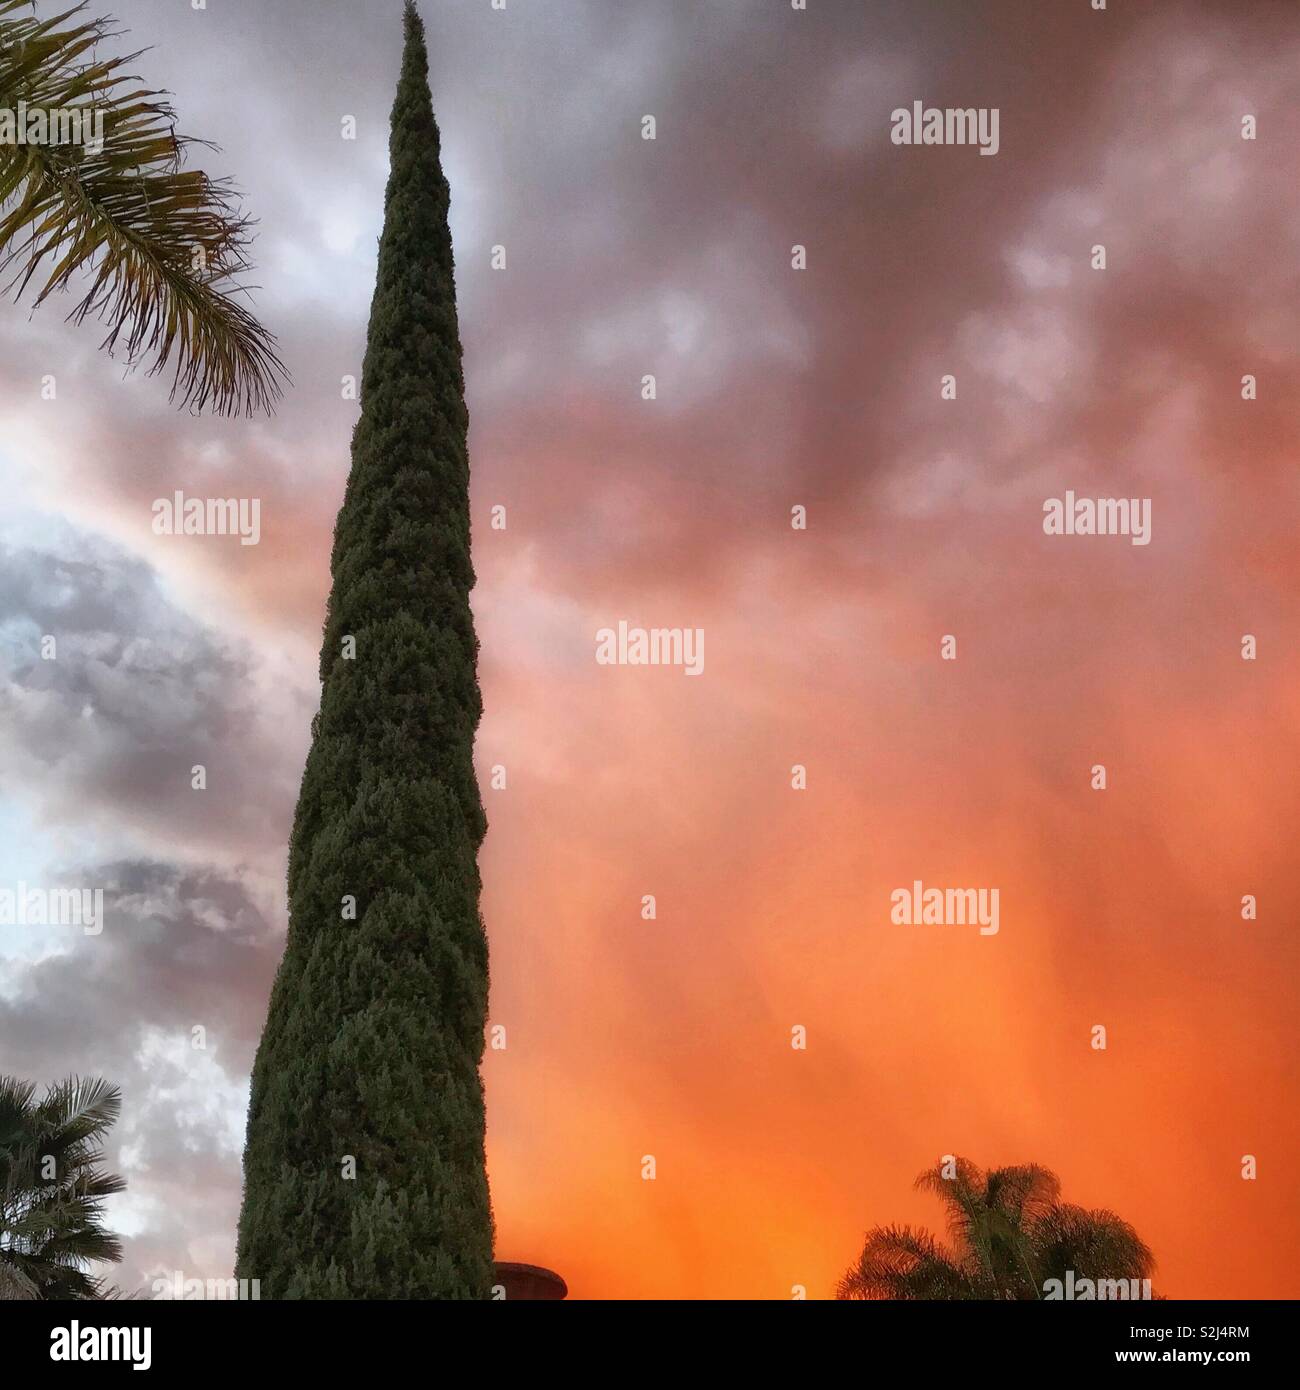 Ein Cypress Tree steht durch die Palmwedel umgeben, während der Himmel ist mit einem bunten Sonnenuntergang in Flammen. Stockfoto